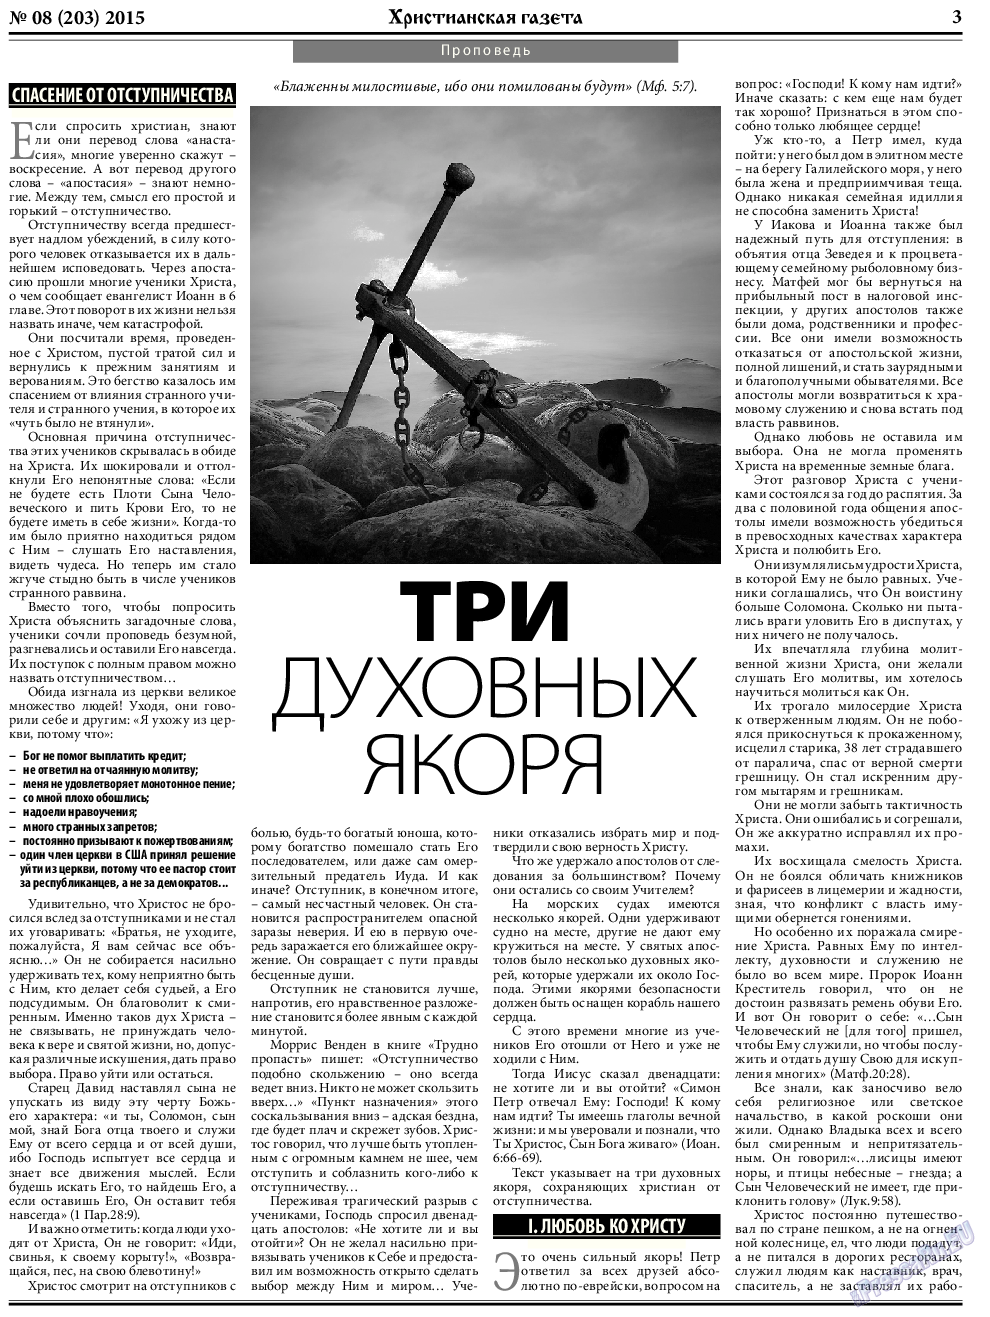 Христианская газета, газета. 2015 №8 стр.3